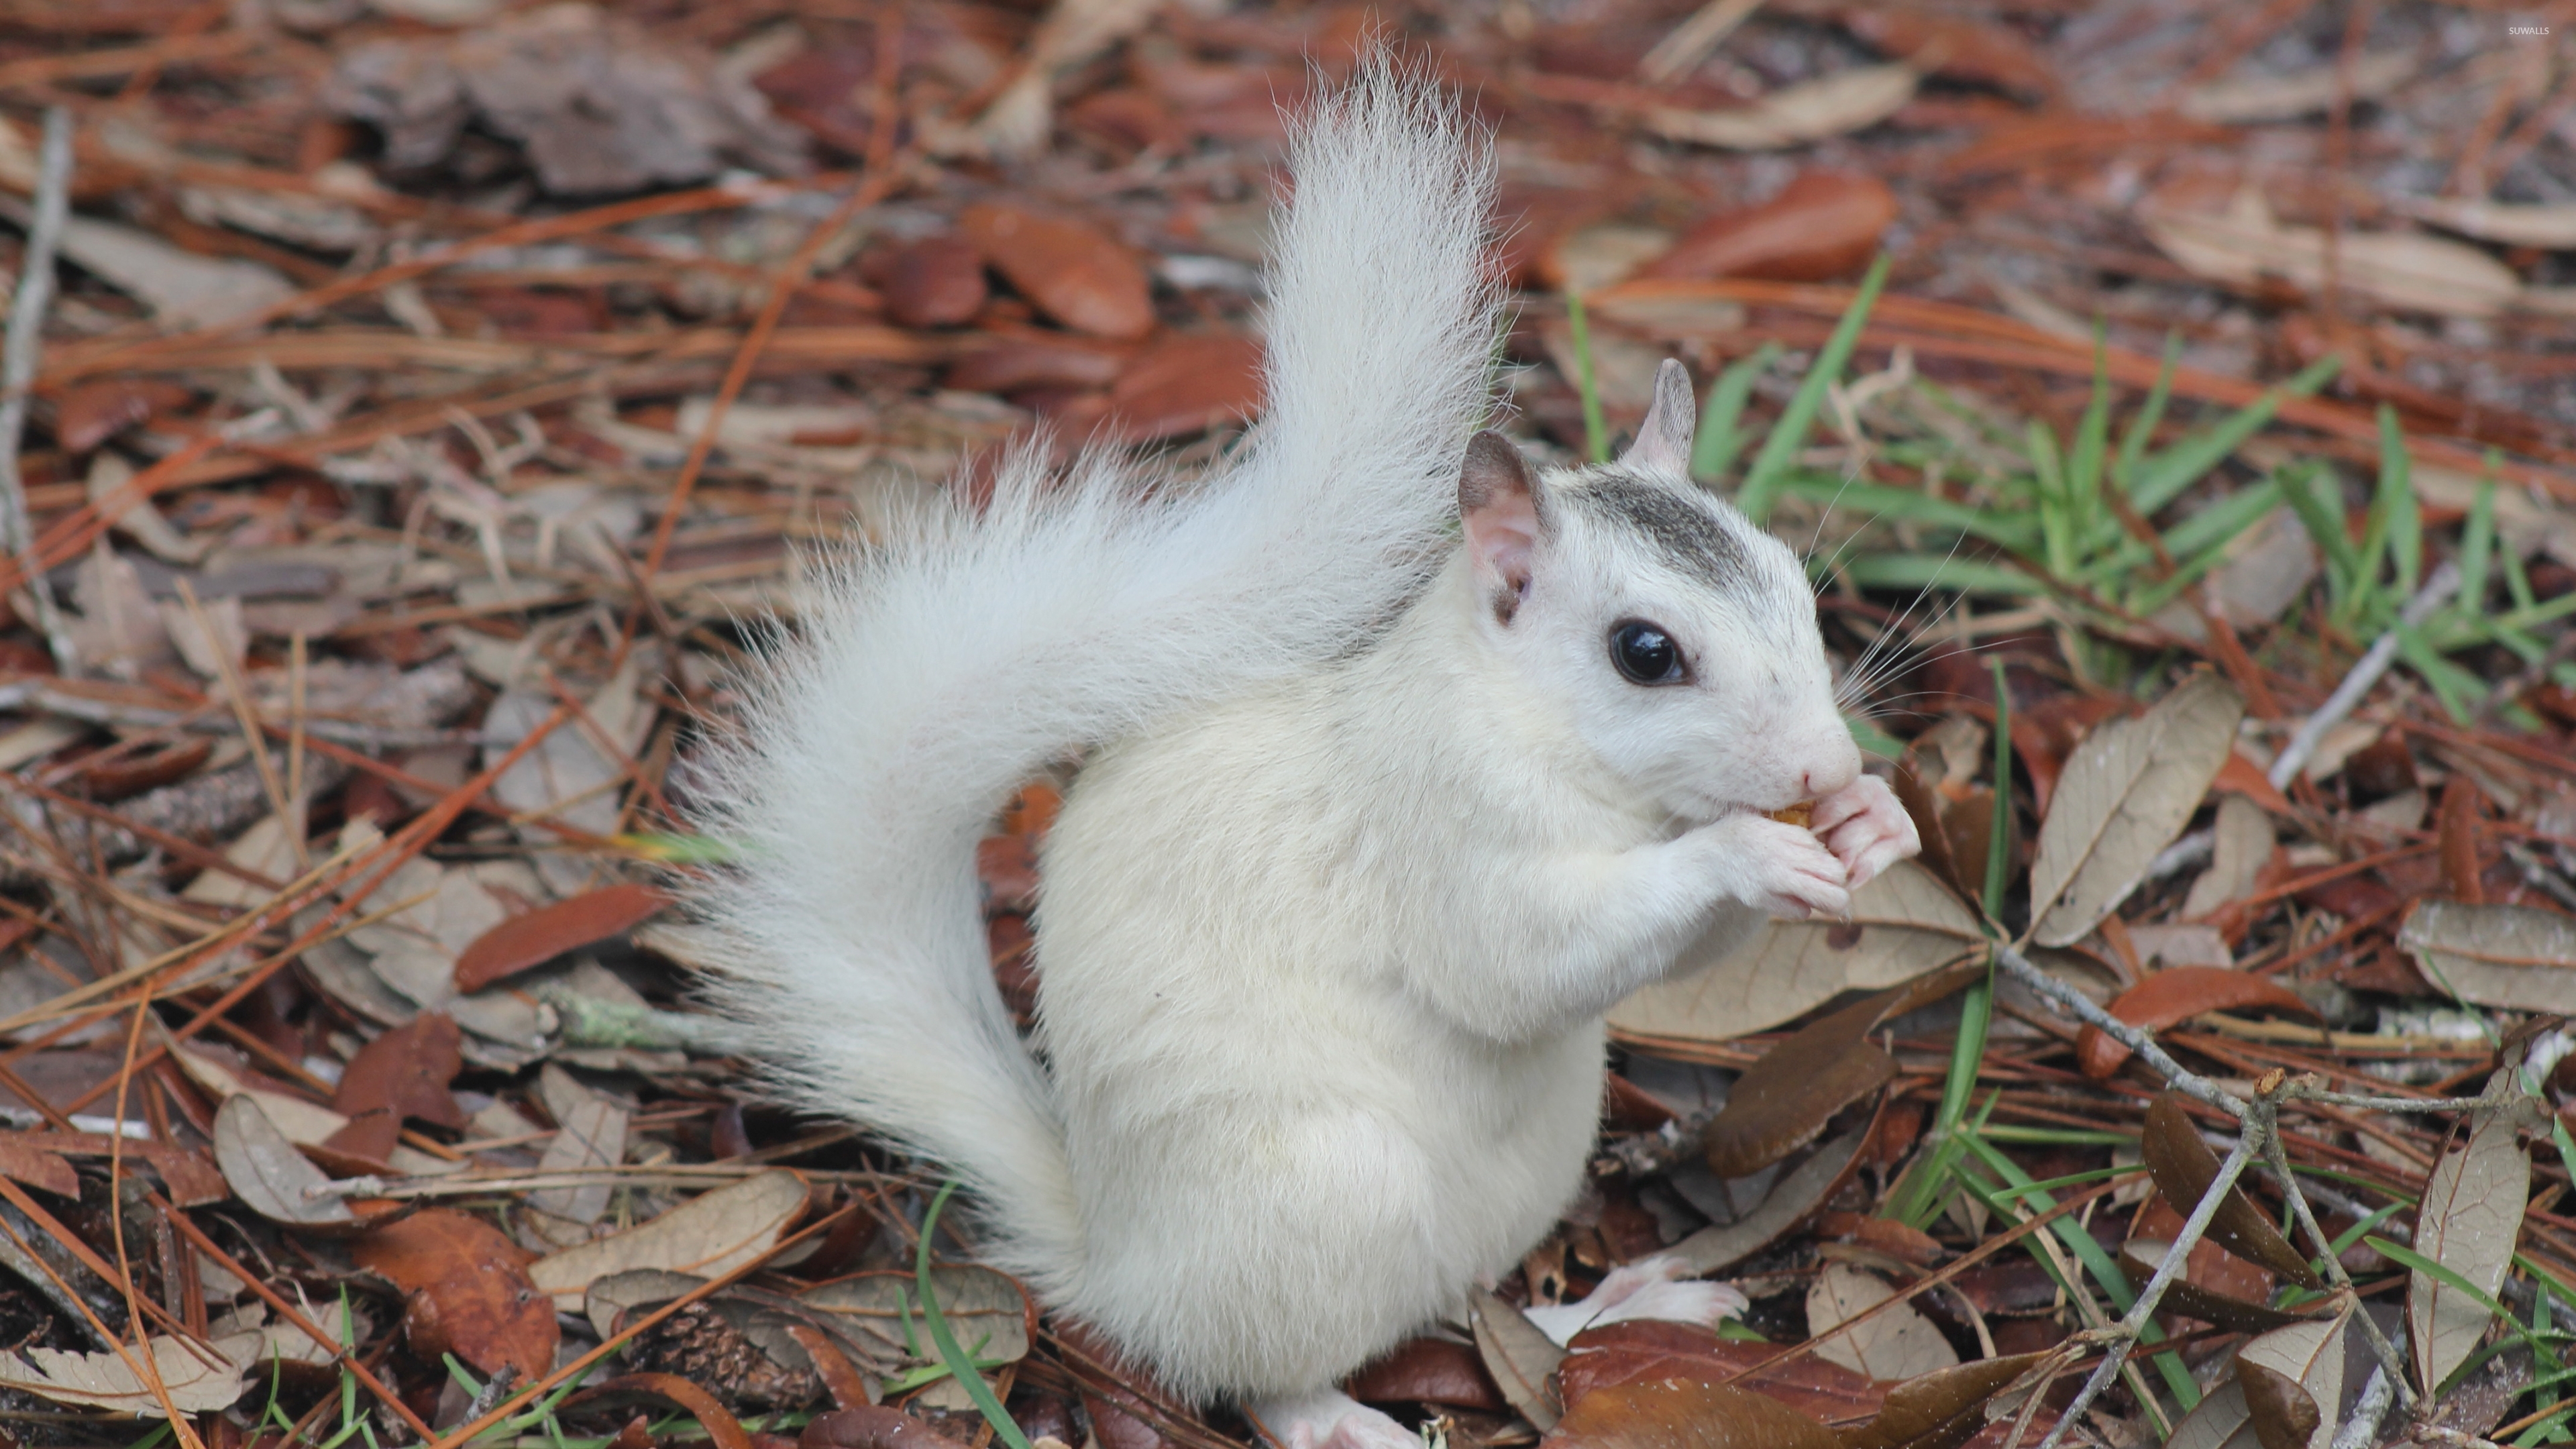 عکس سنجاب سفید رنگ کیوت و بامزه یکی از خاص ترین سنجاب ها